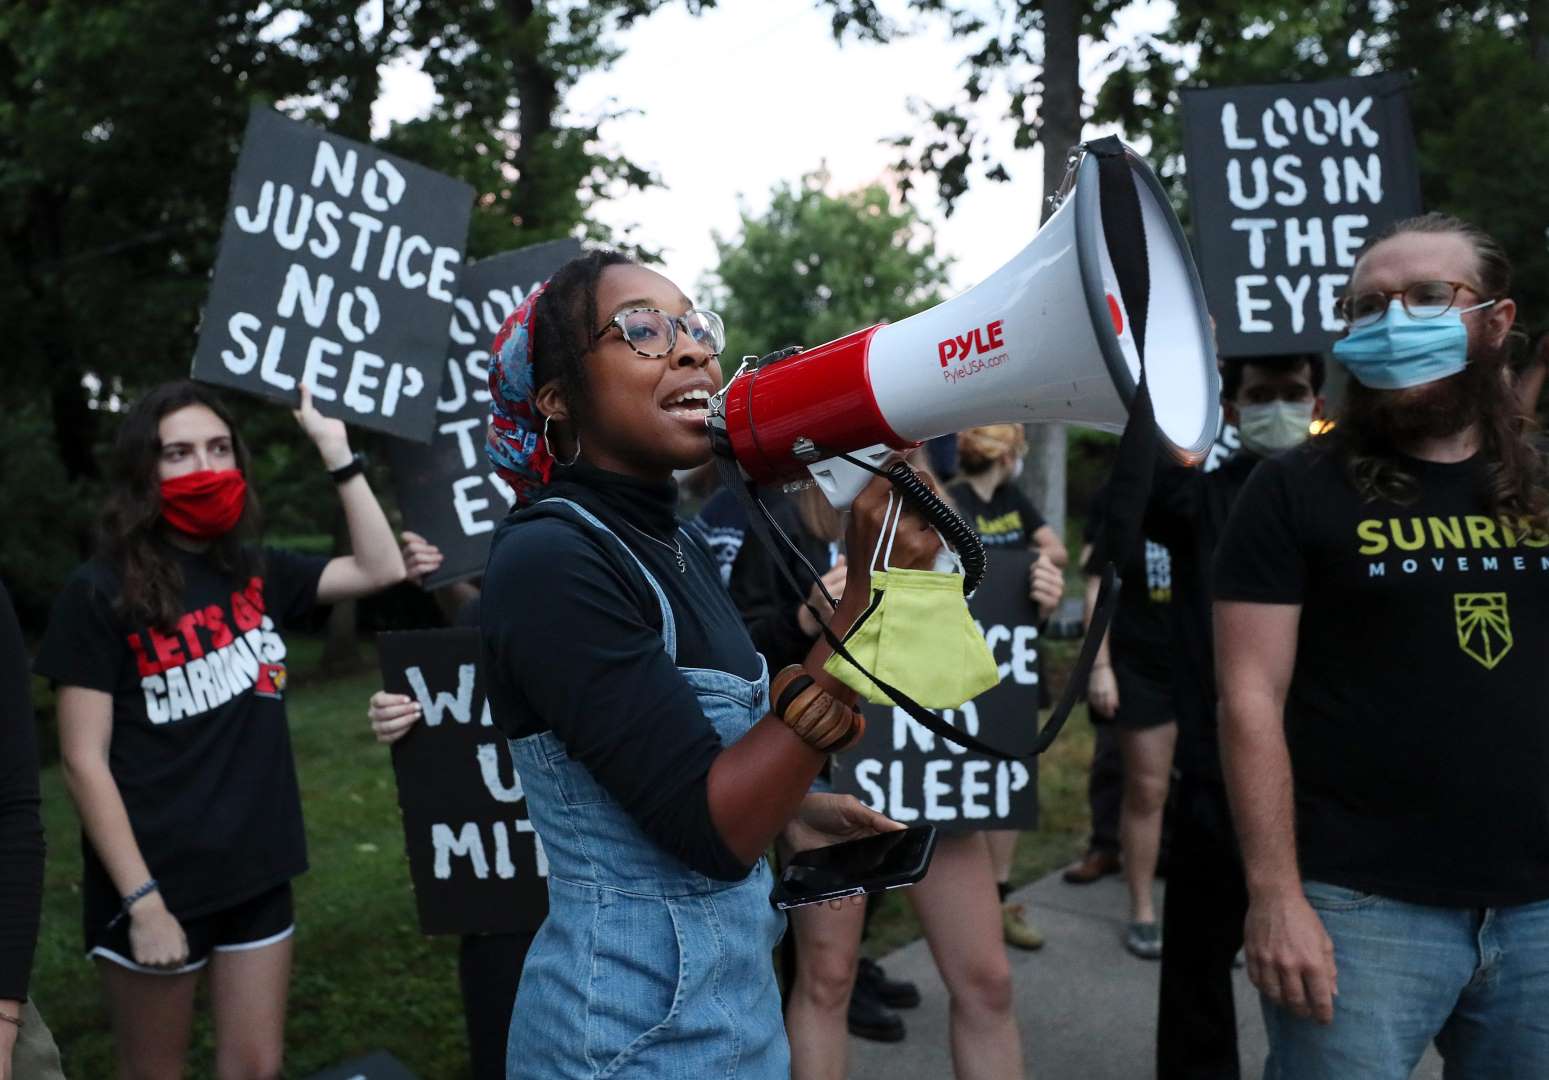 Um ativista do Sunrise fala em um megafone enquanto outros manifestantes ficam atrás segurando cartazes que dizem "No Justice No Sleep" e "Look Us In The Eyes".